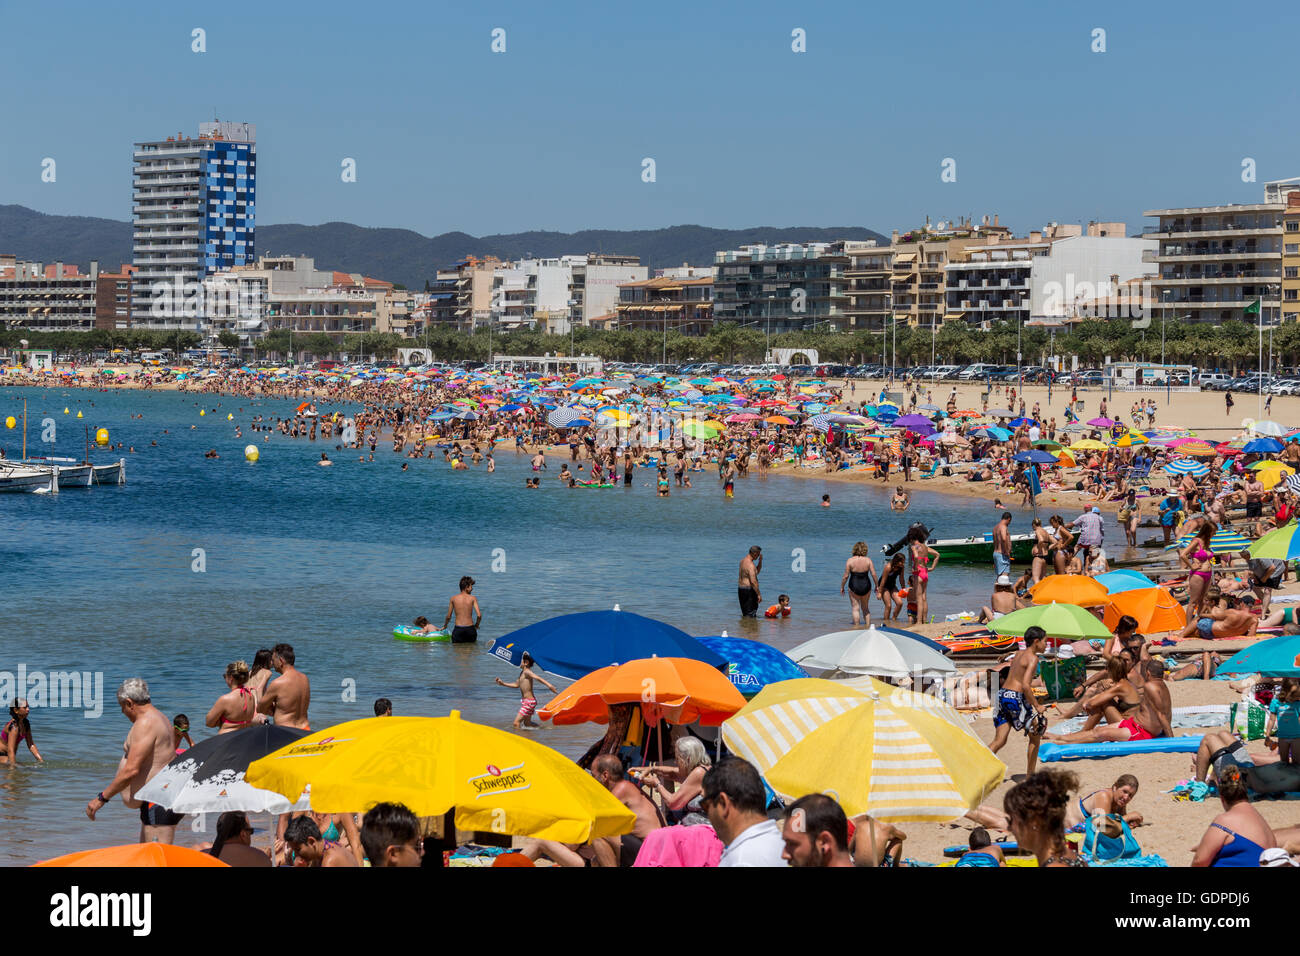 Village de Palamos, Espagne - Juin 28, 2016 : Les gens les vacanciers, le bronzage sur la plage, sur le front de mer dans le village de Palamos, Costa Br Banque D'Images